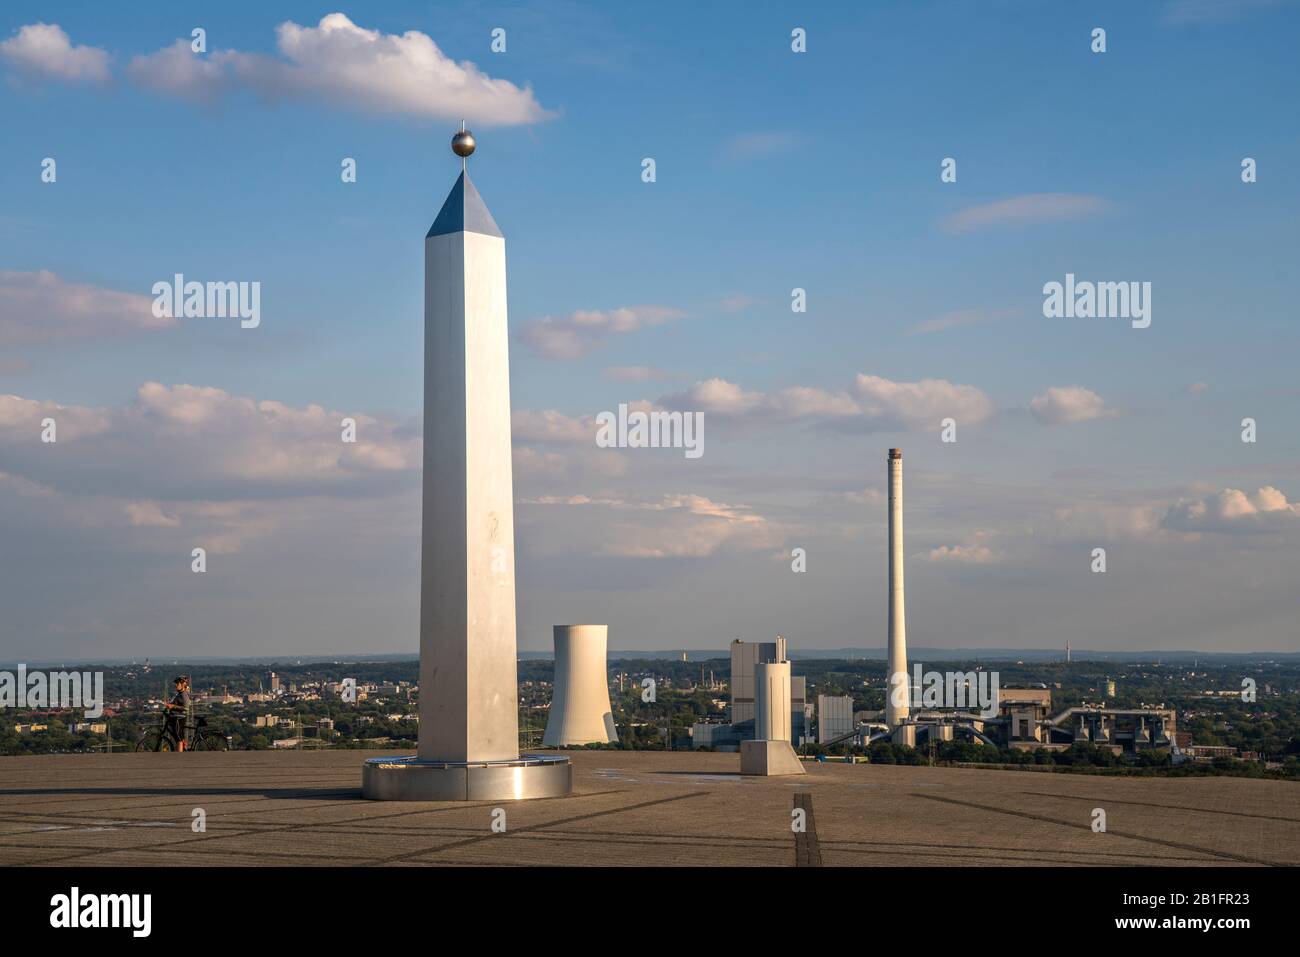 Obelisk und Sonnenuhr auf der Halde Hoheward in Herten, Ruhrgebiet, Nordrhein-Westfalen, Deutschland, Obelisk und Sonnenuhr auf Hoheward verderben Spitze i Stockfoto